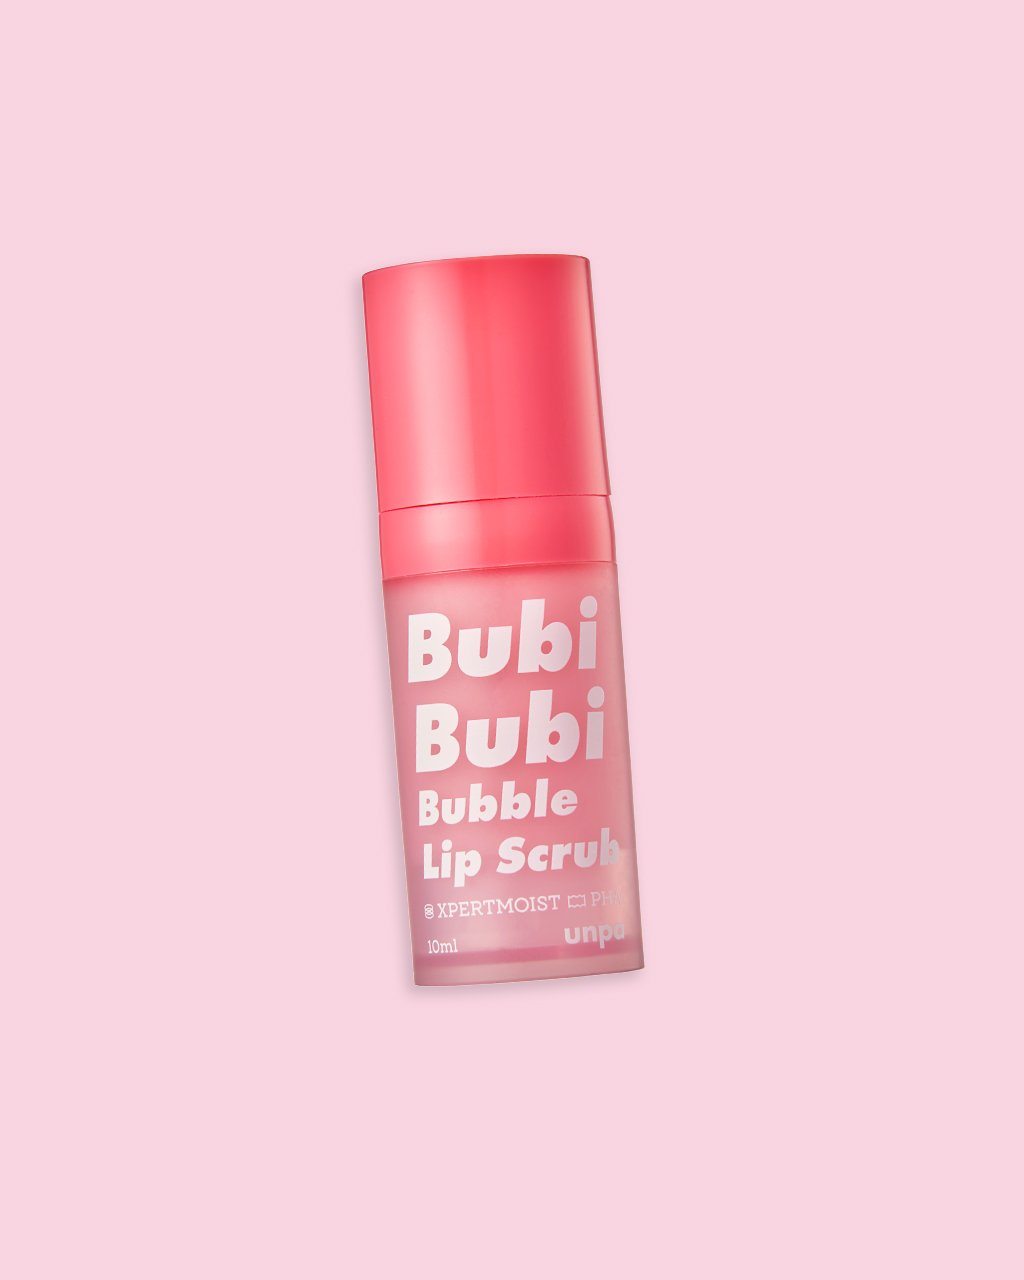 Bubi Bubi Bubble Lip Scrub Treatment/Balm UNPA 